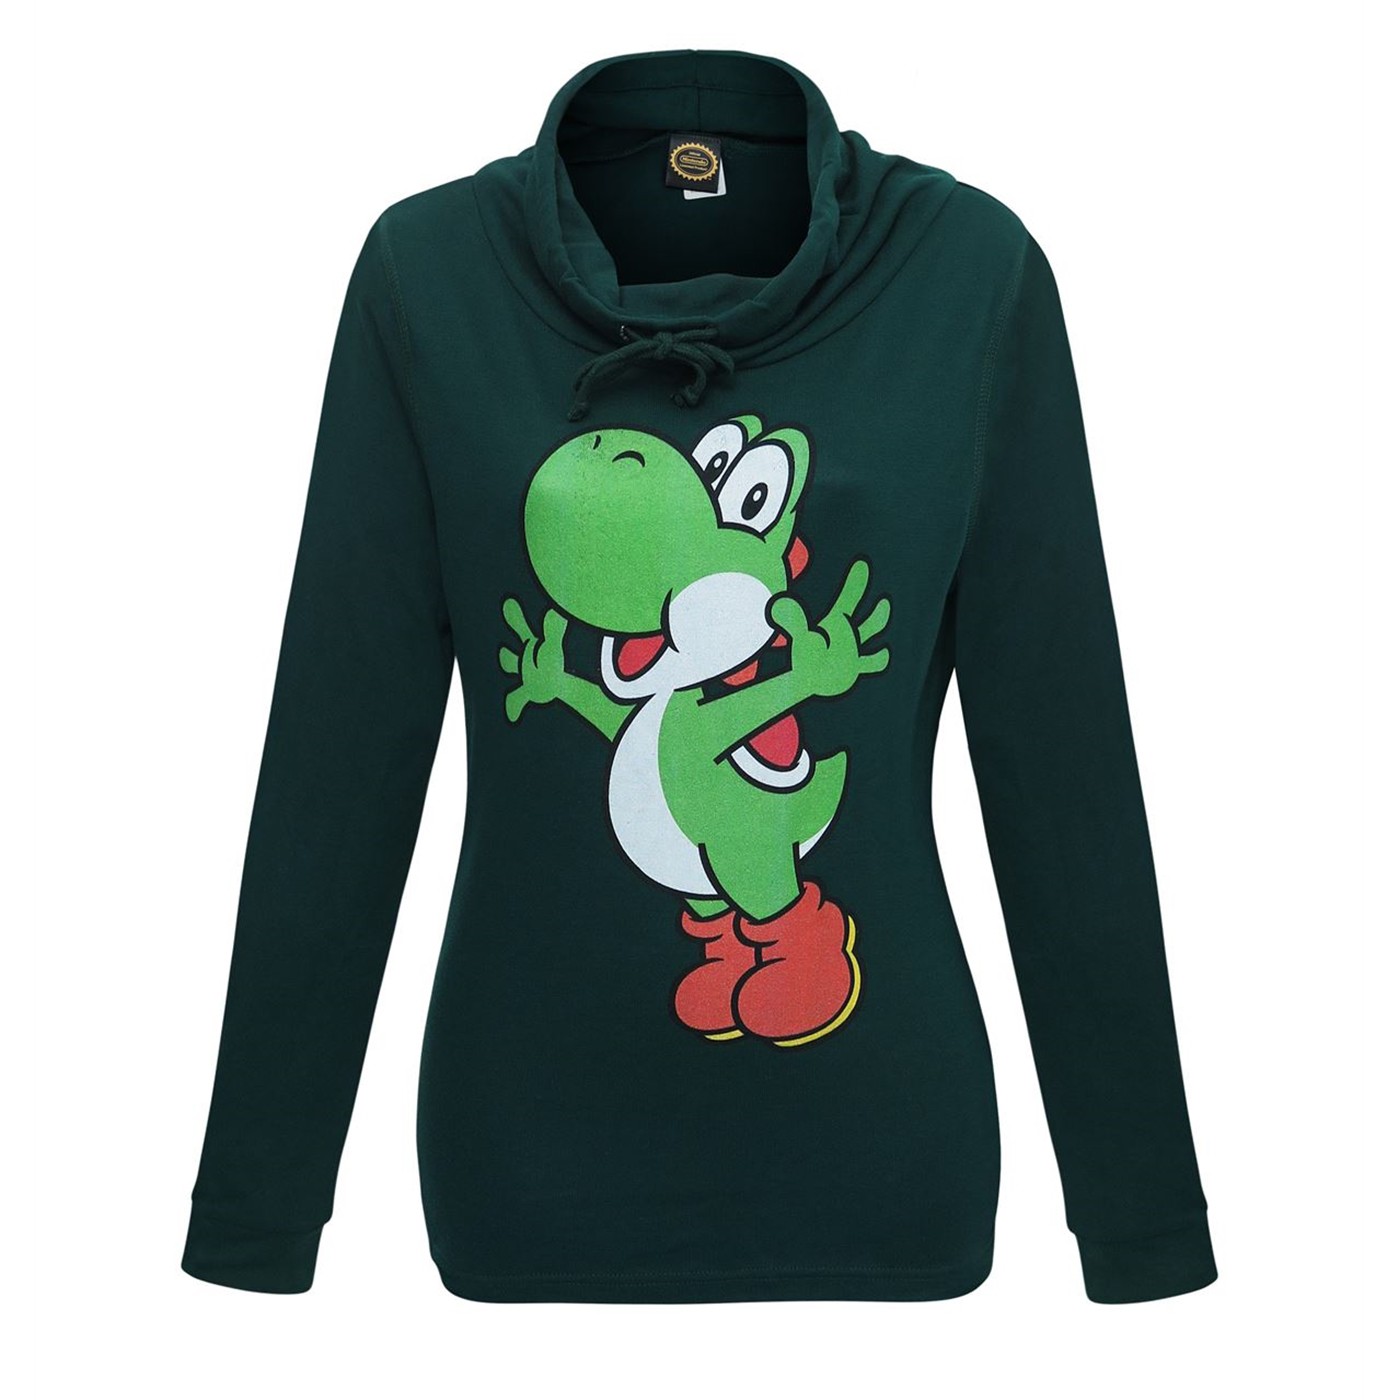 Super Mario Yoshi Women's Cowl Sweatshirt